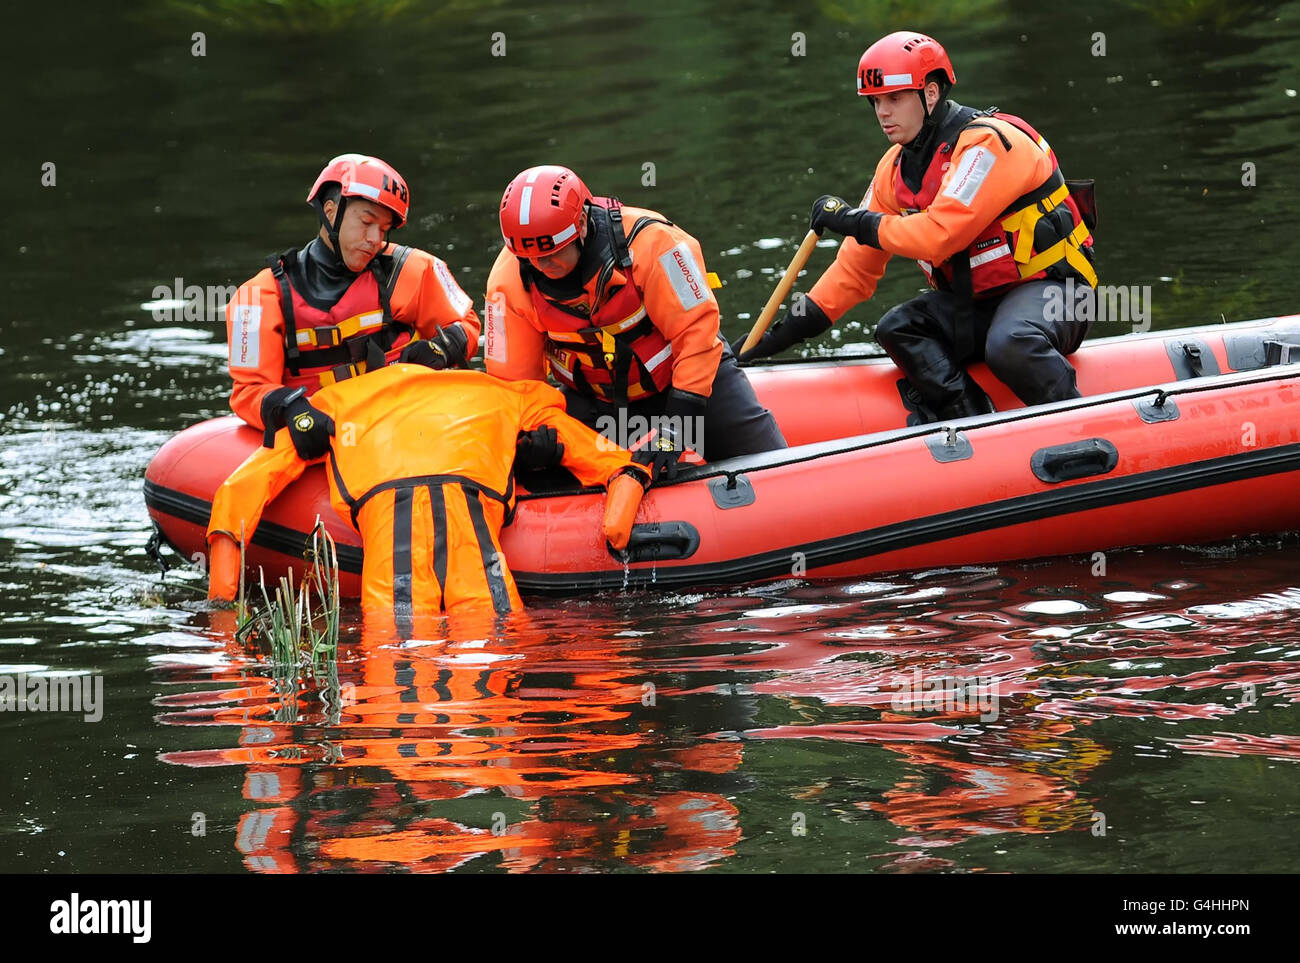 Les pompiers tirent un mannequin hors d'une rivière, à Hackney Marshes, dans le nord-est de Londres, dans le cadre d'un exercice de sauvetage de rivière. Banque D'Images